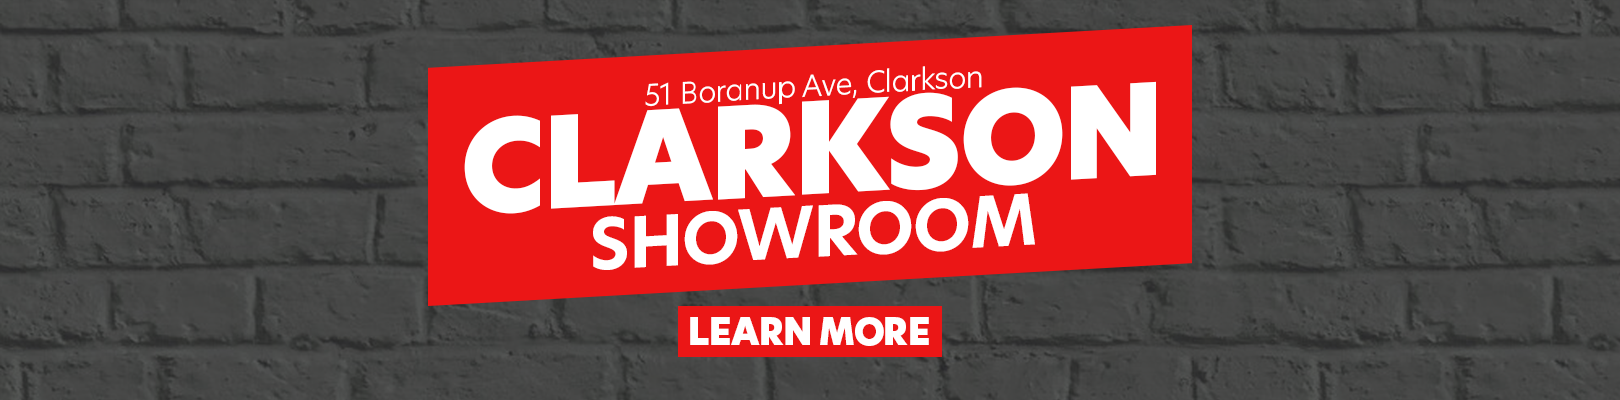 Clarkson Showroom - Revamp